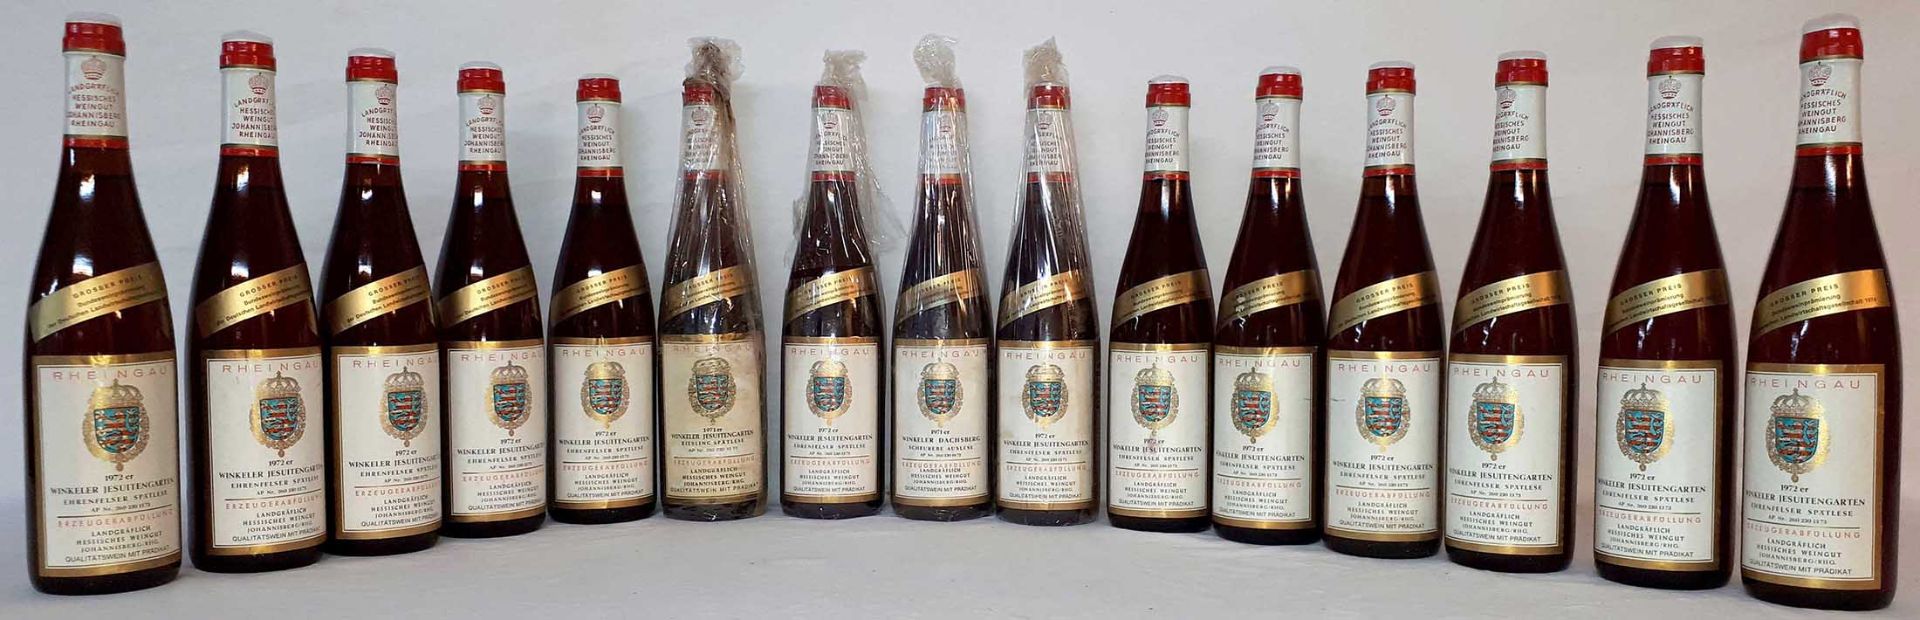 15 whole bottles white wine Germany.